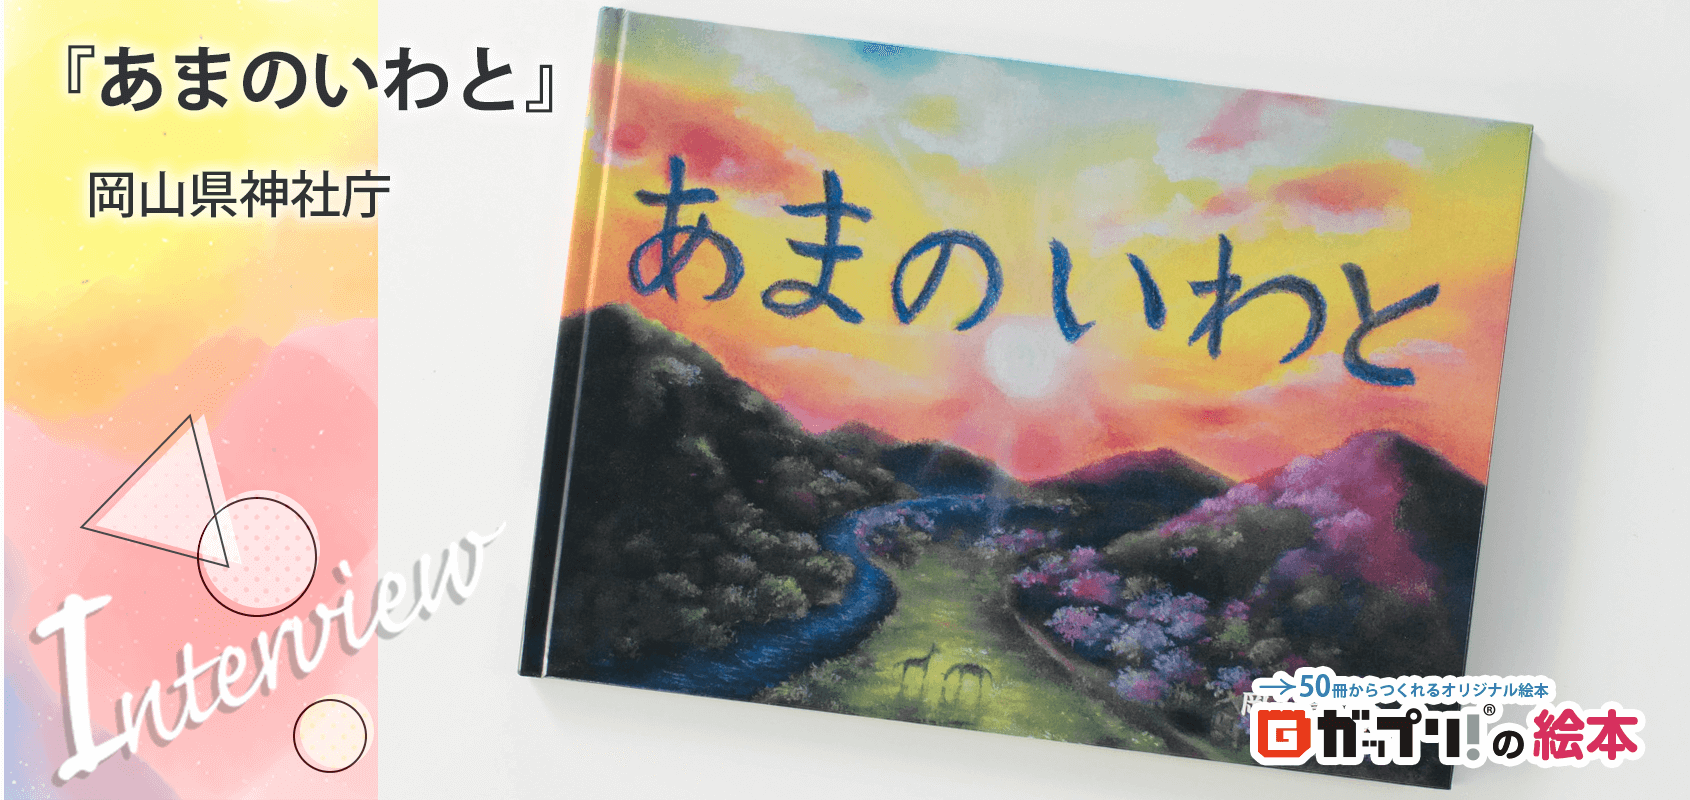 岡山県神社庁様製作のオリジナル絵本『あまのいわと』